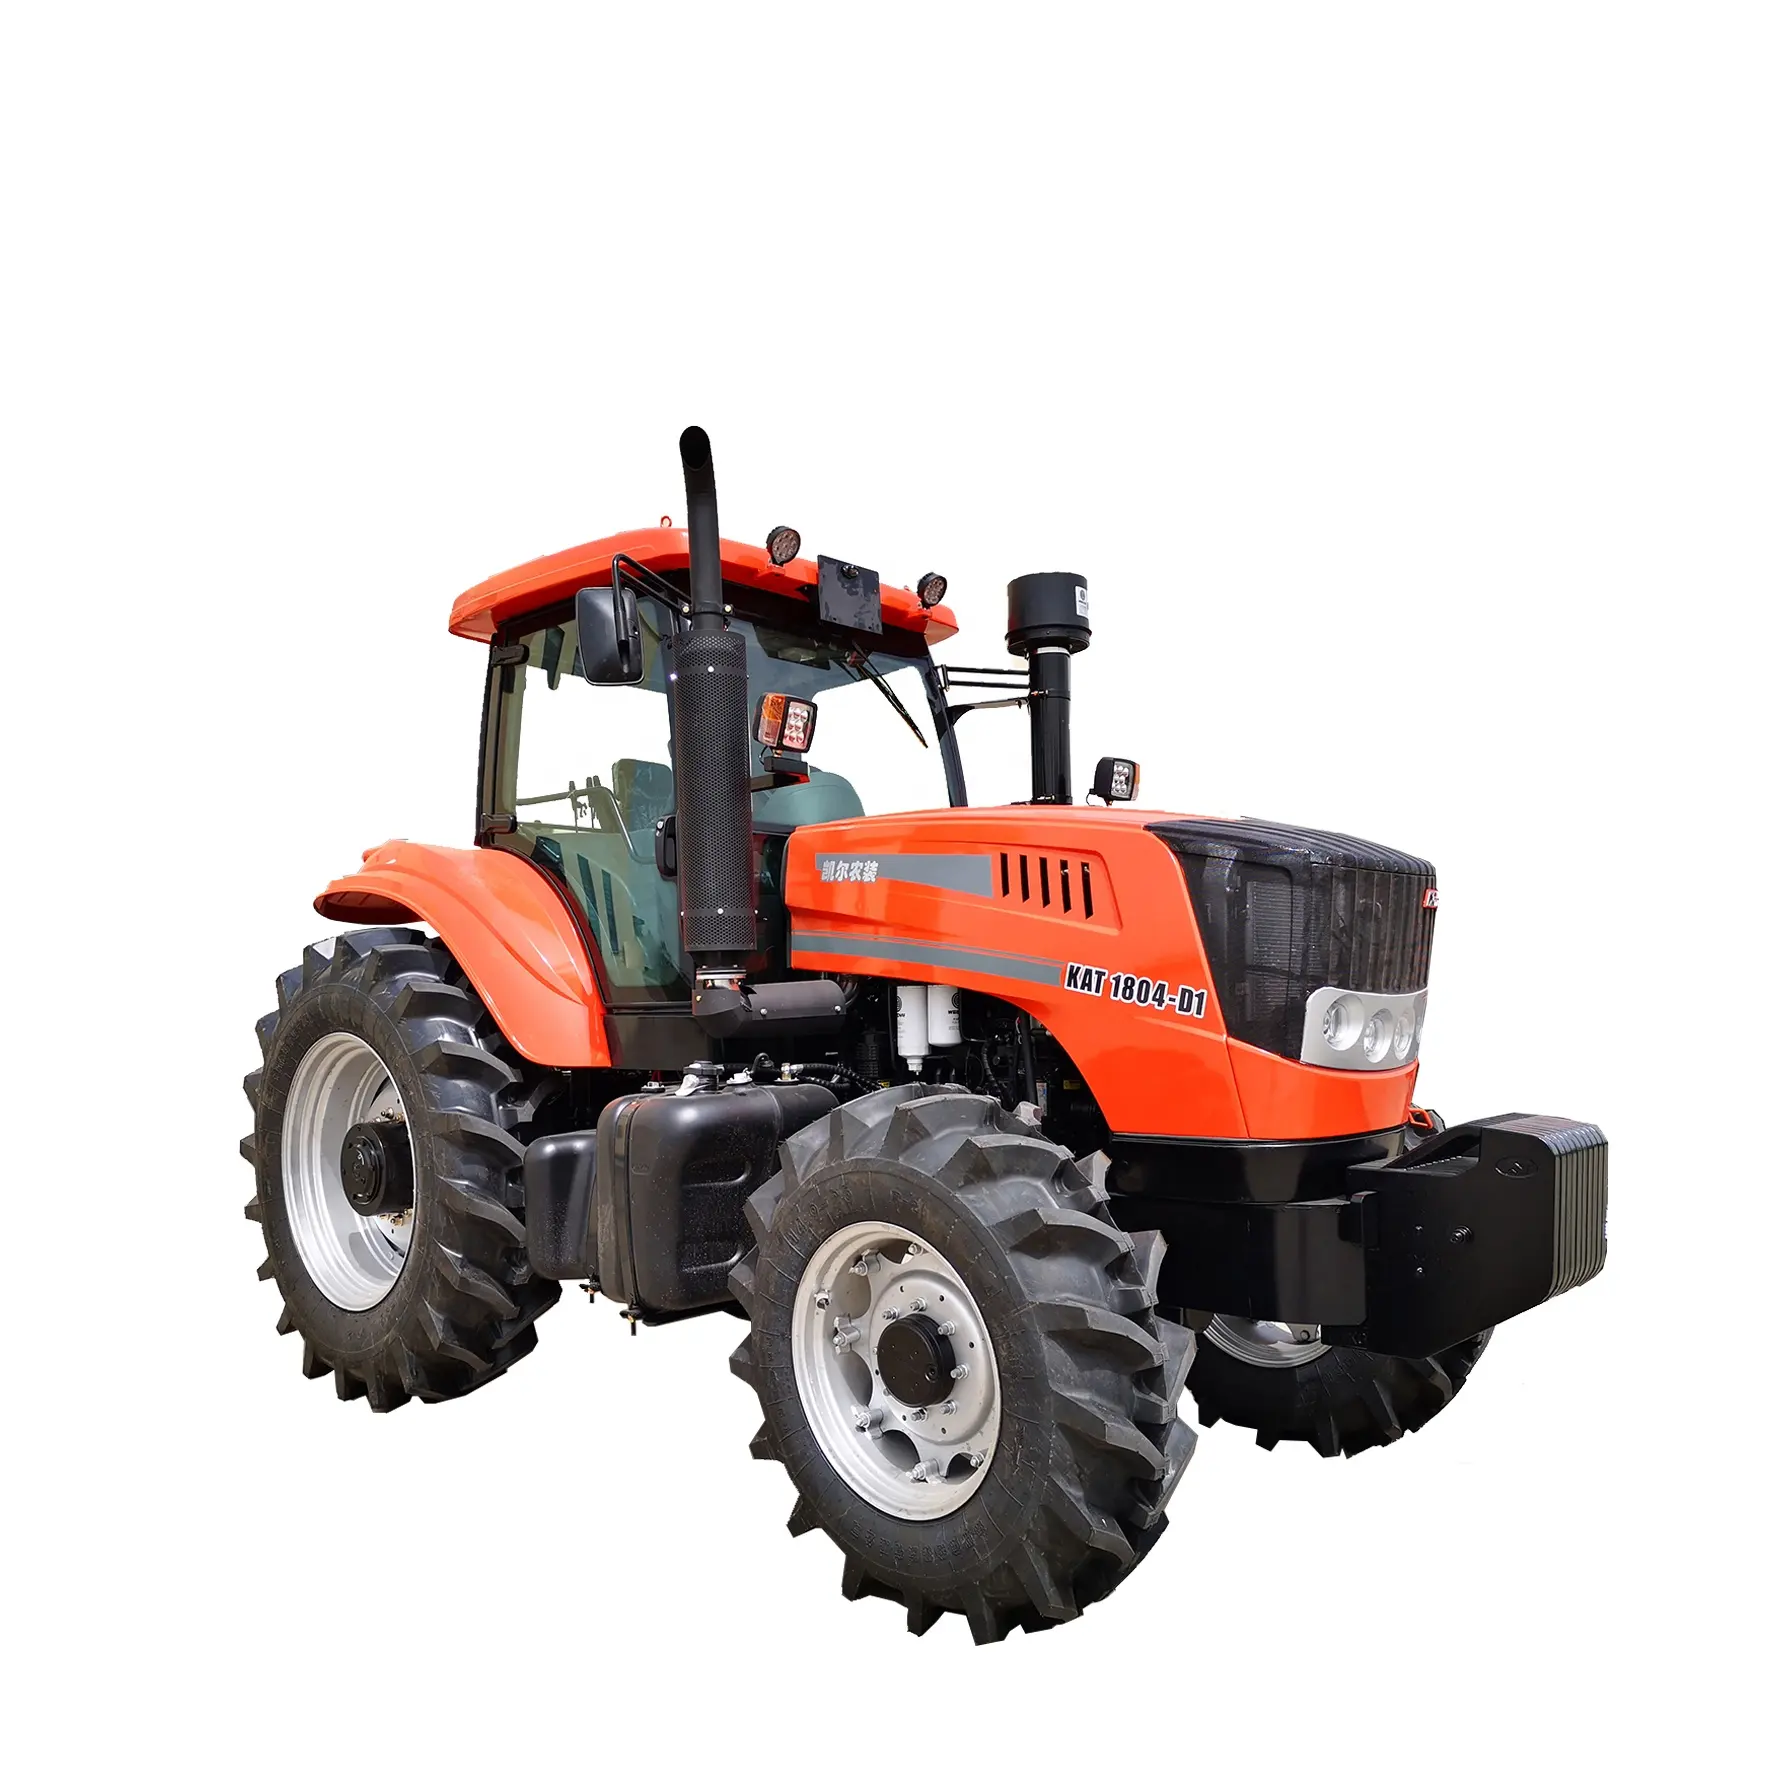 Tractores y equipo de granja pequeño KAT 1804-D1 180HP, piezas de maquinaria agrícola, mecanizado, CHINA